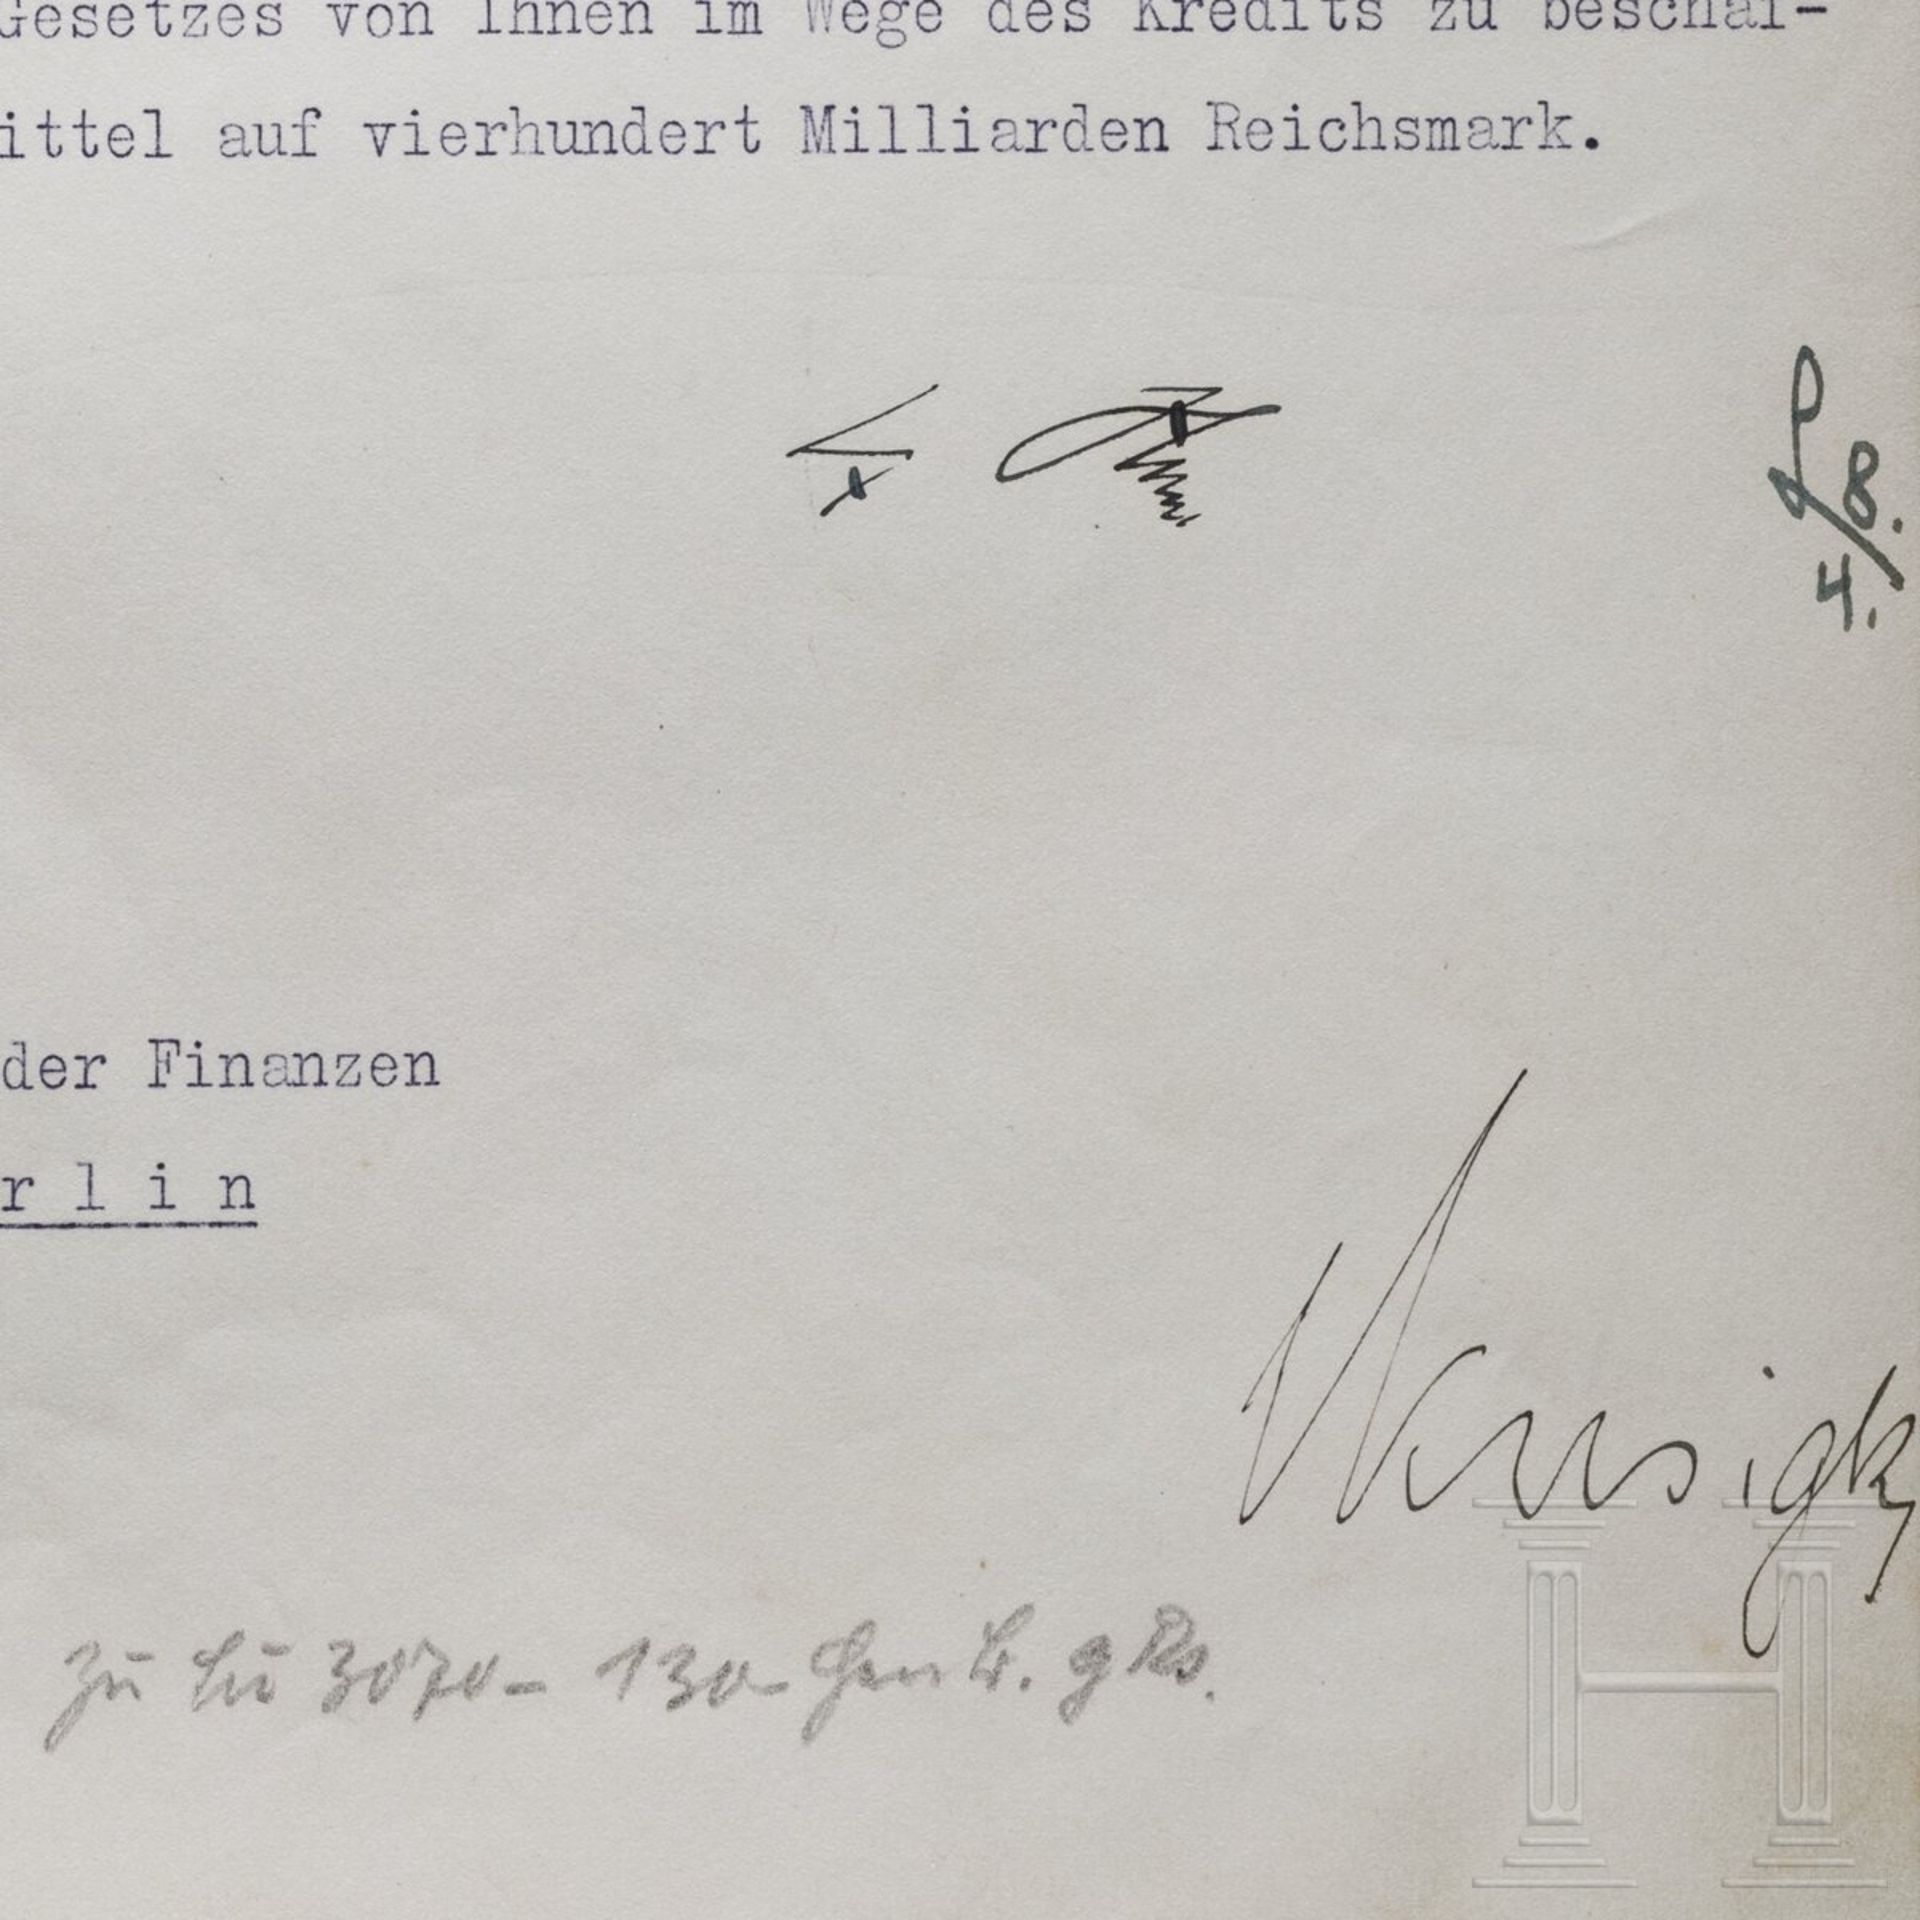 Adolf Hitler - Kreditermächtigung vom 8. April 1944 mit einer Erhöhung von 310 auf 400 Milliarden RM - Image 3 of 3